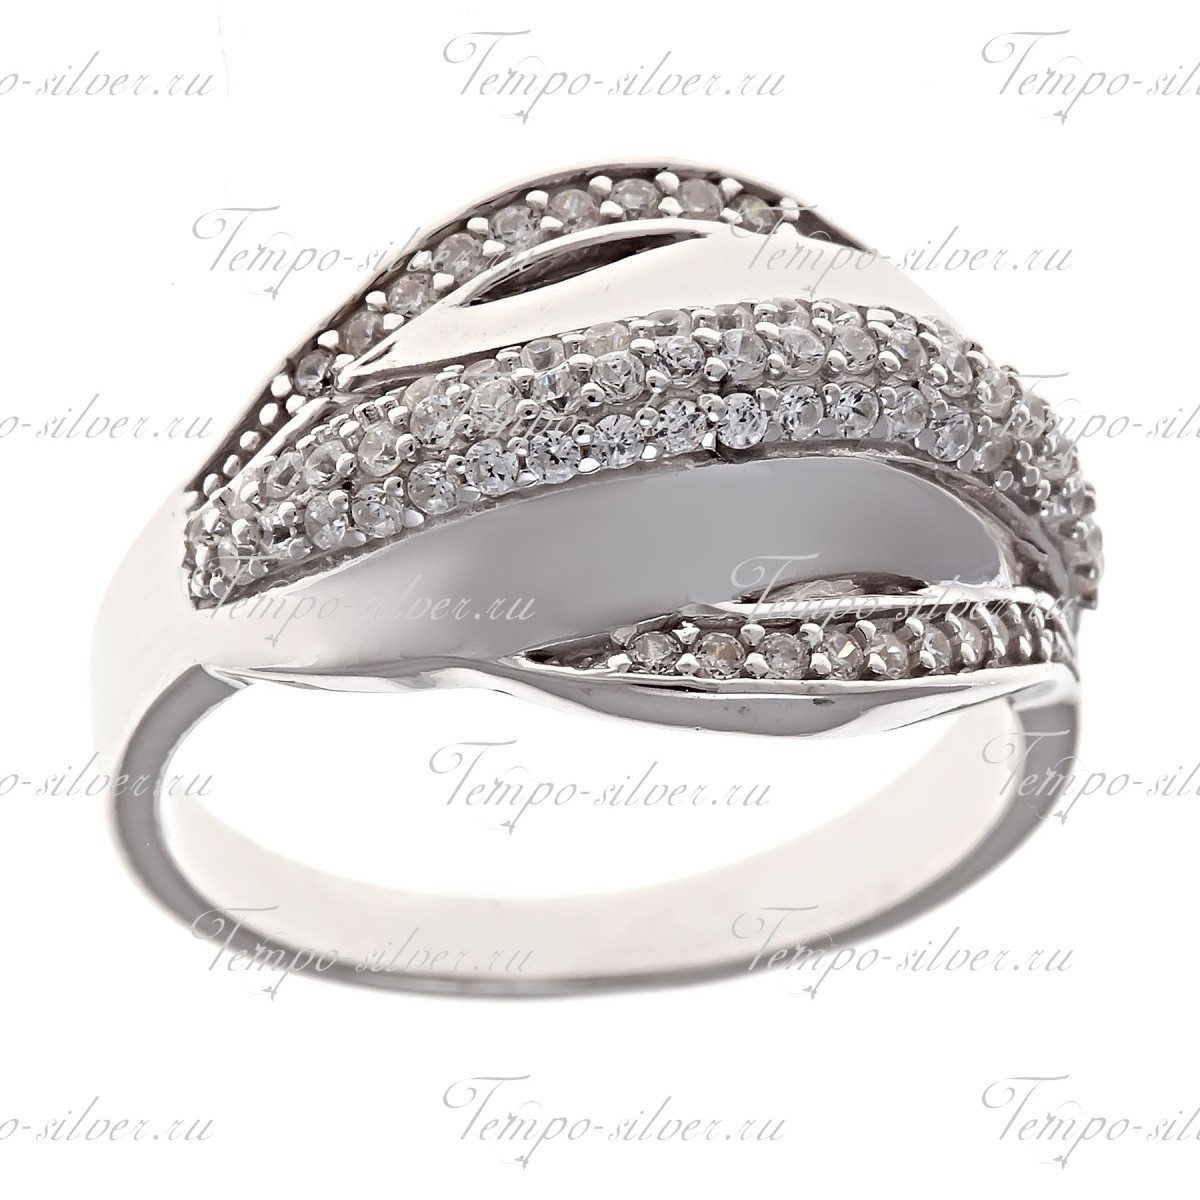 Кольцо из серебра выпуклой формы с изящными дорожками из белых камней цена